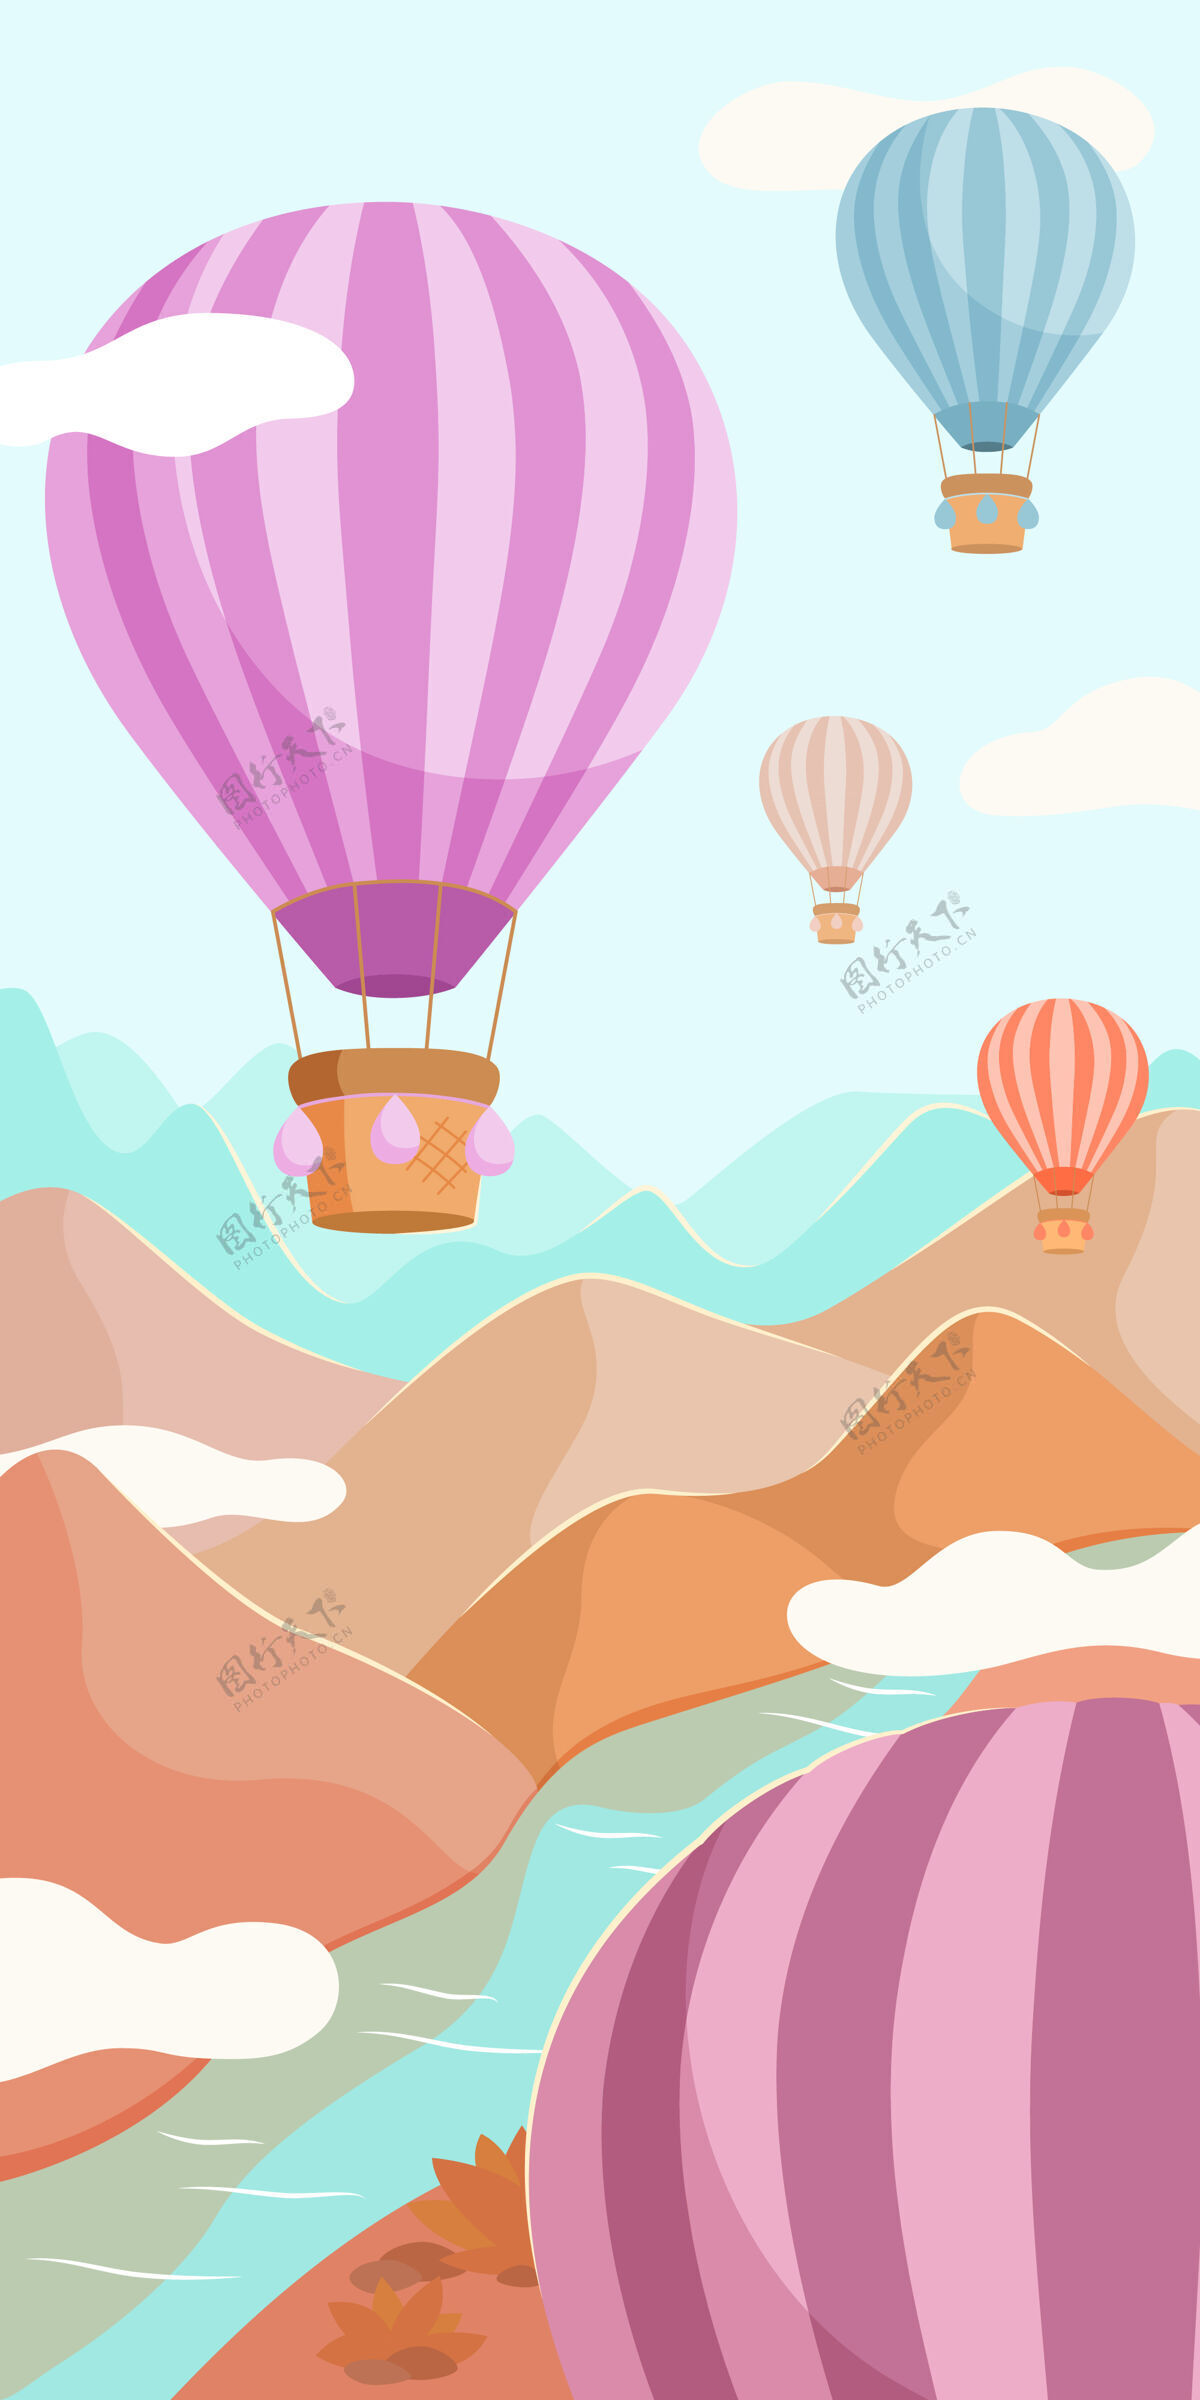 篮子五彩缤纷的气球带着篮子飞过江山飞行高旅行